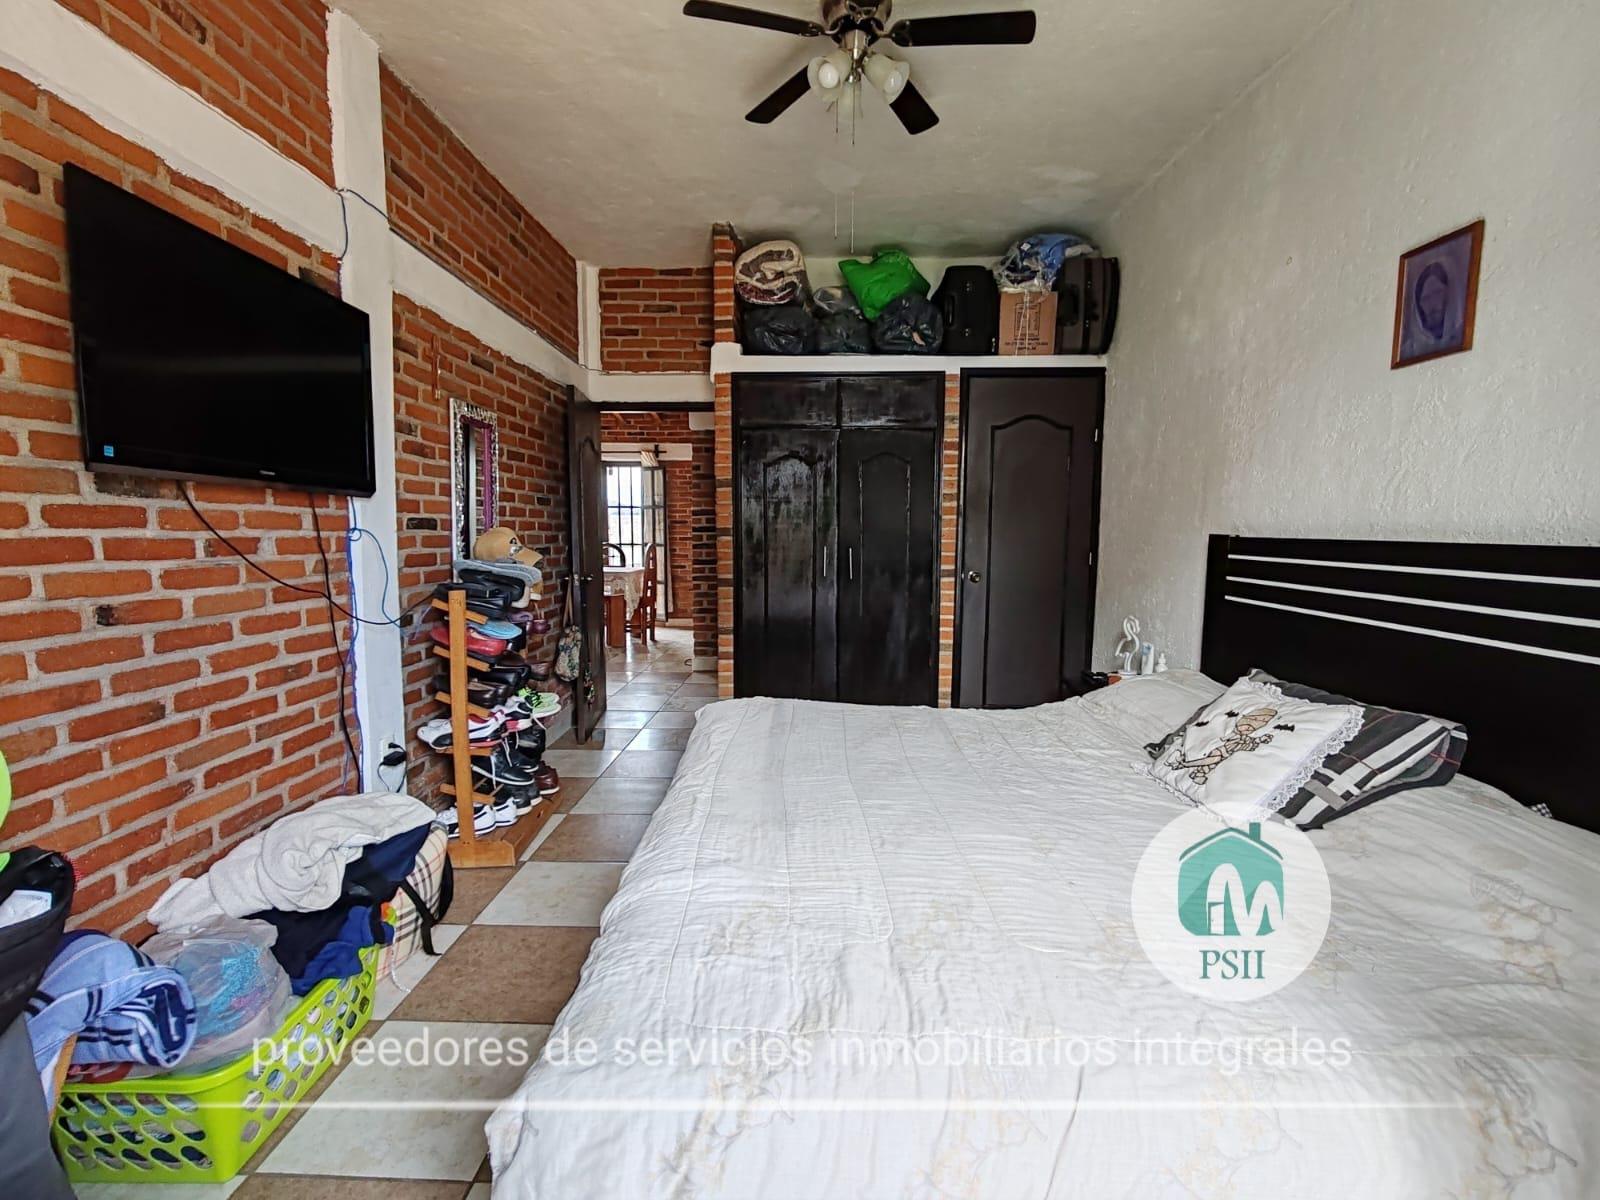 Casa sola con alberca en Xochitepec Morelos